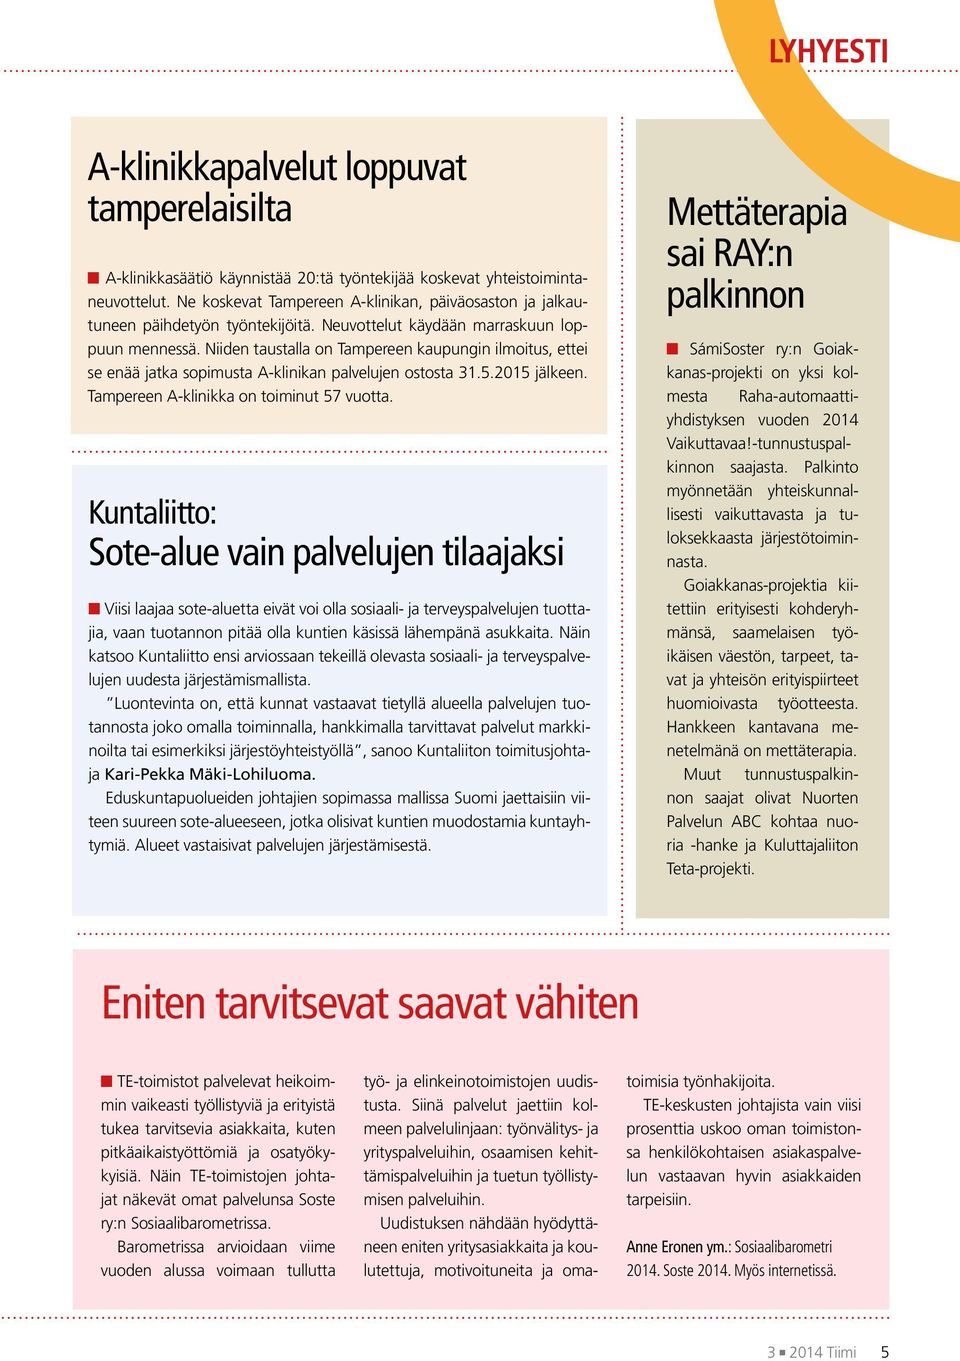 Niiden taustalla on Tampereen kaupungin ilmoitus, ettei se enää jatka sopimusta A-klinikan palvelujen ostosta 31.5.2015 jälkeen. Tampereen A-klinikka on toiminut 57 vuotta.